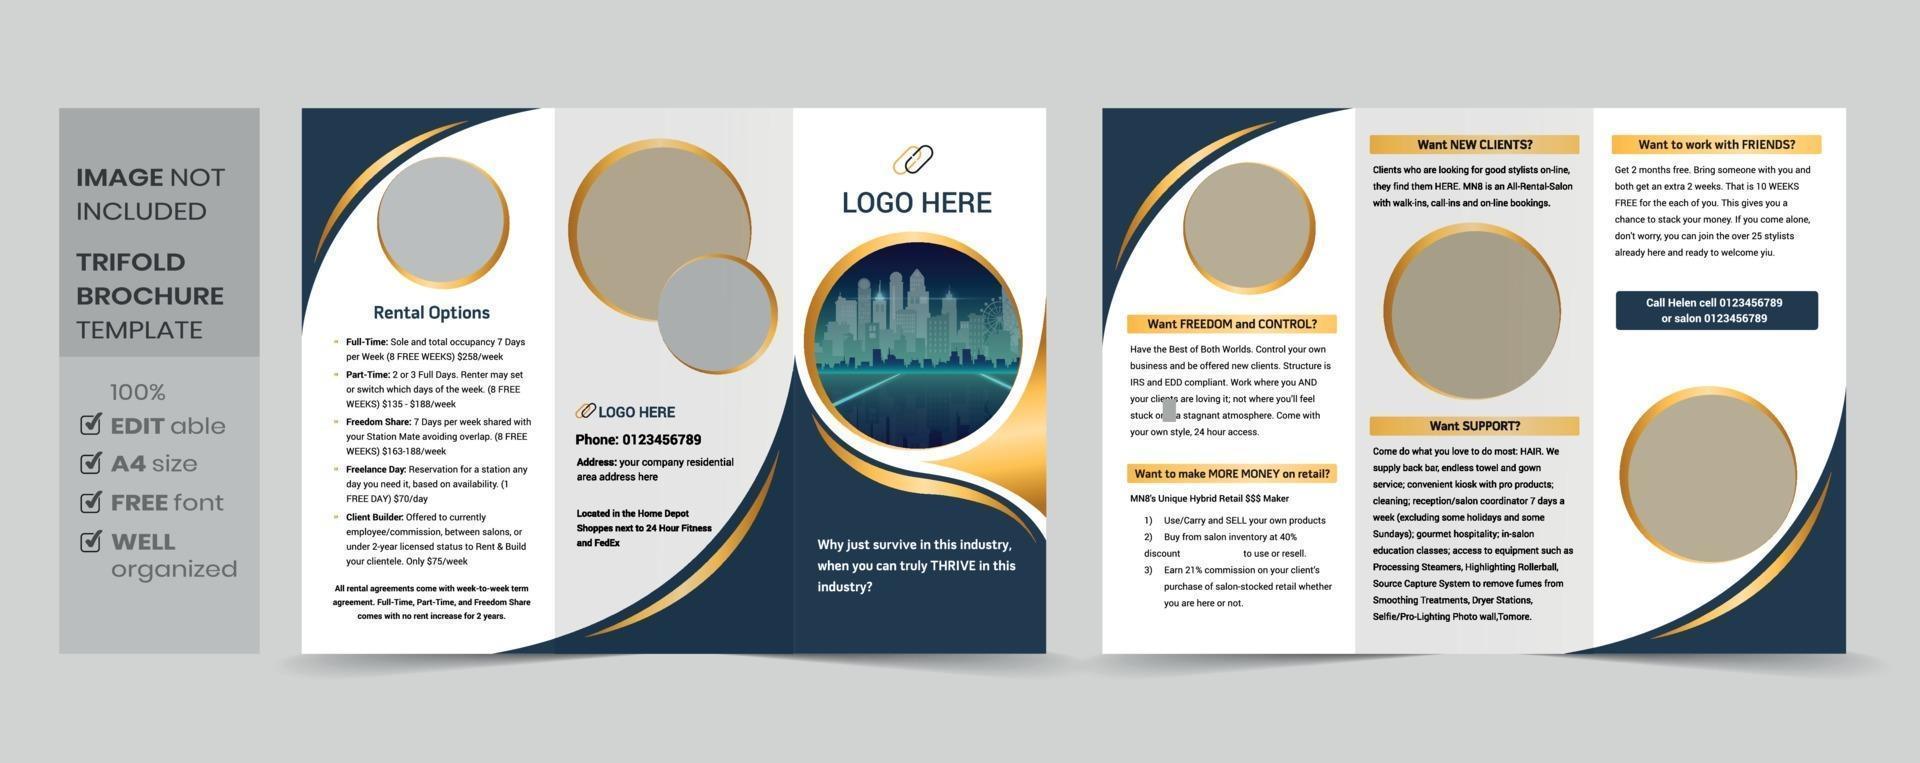 modello di brochure a tre ante aziendale moderno aziendale creativo vettore